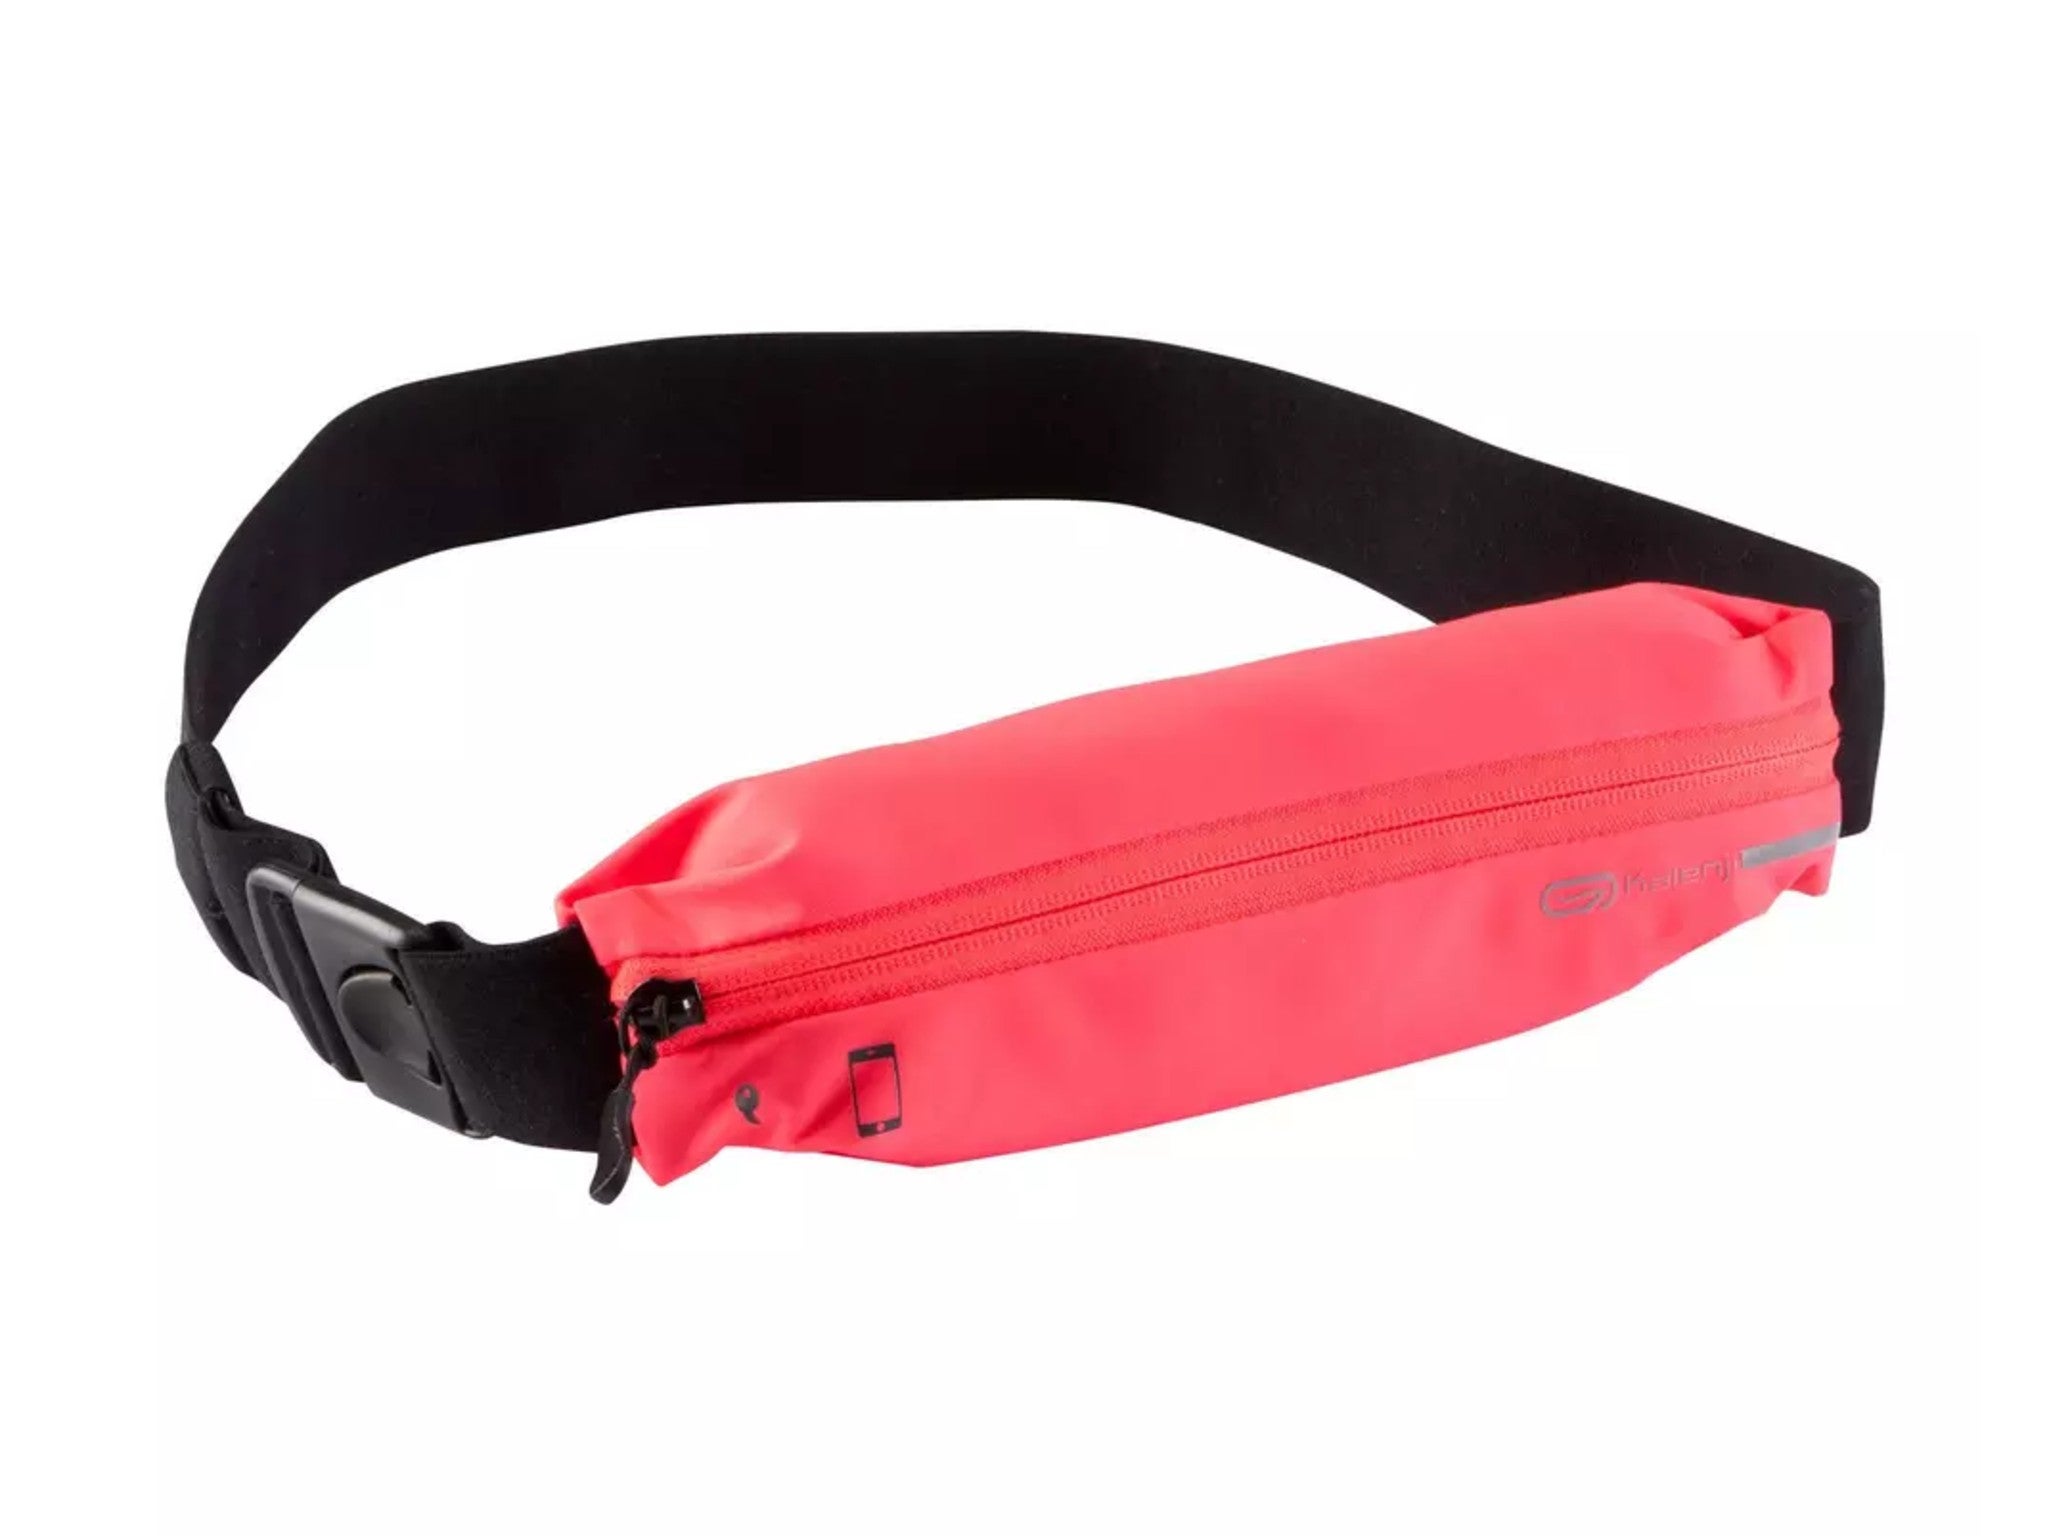 Flip Style Belt Running Waistband Sport Waist Bag Fitness Pouch Mobile Cash Keys 